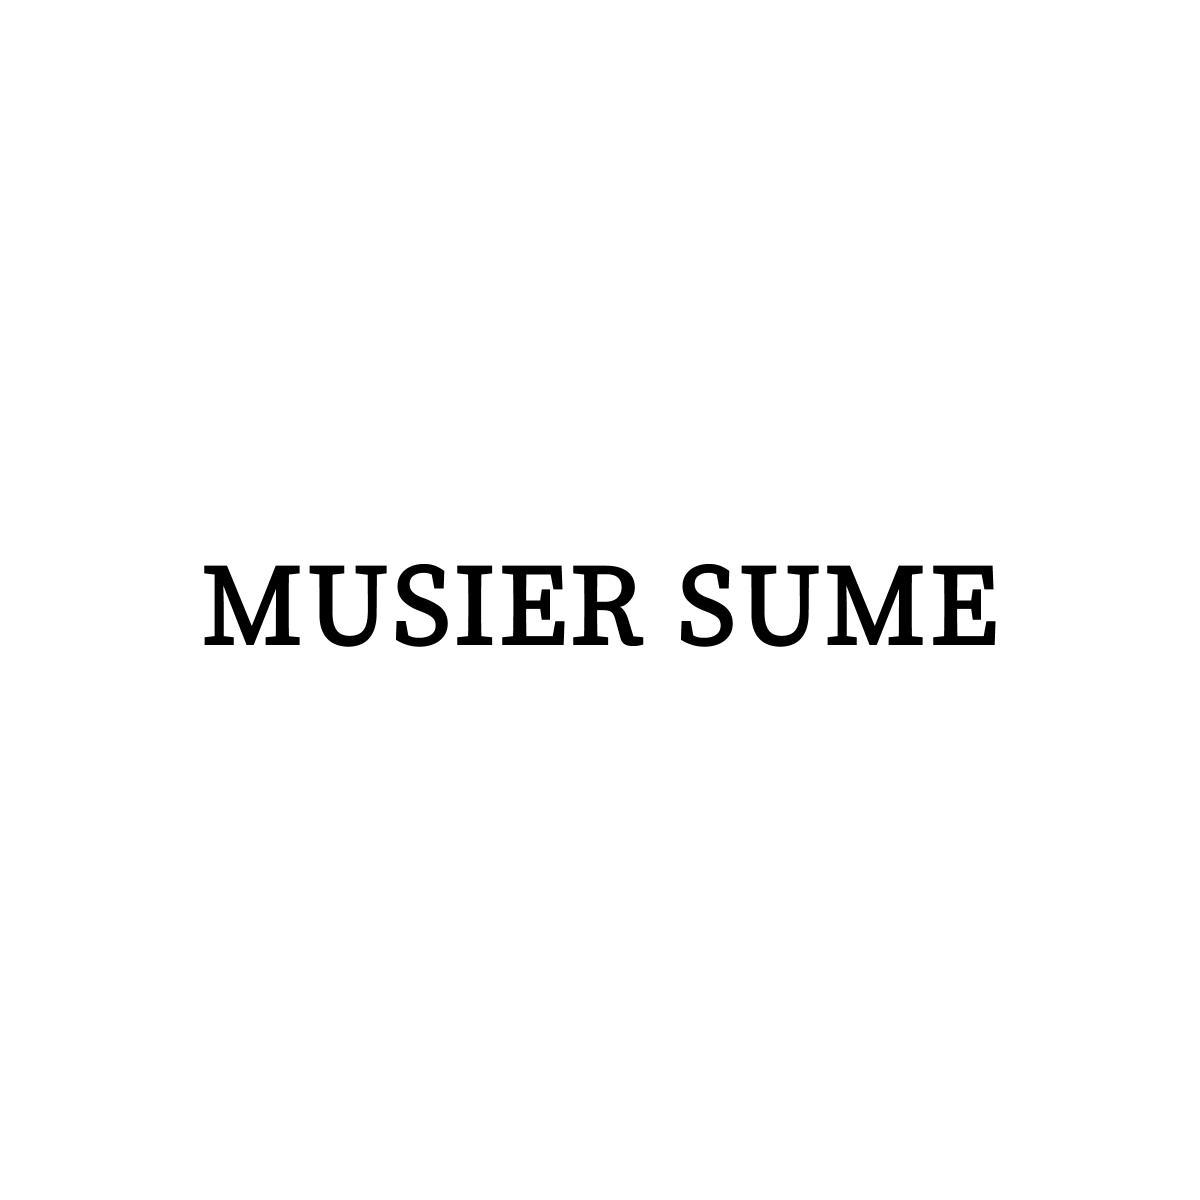 MUSIER SUME